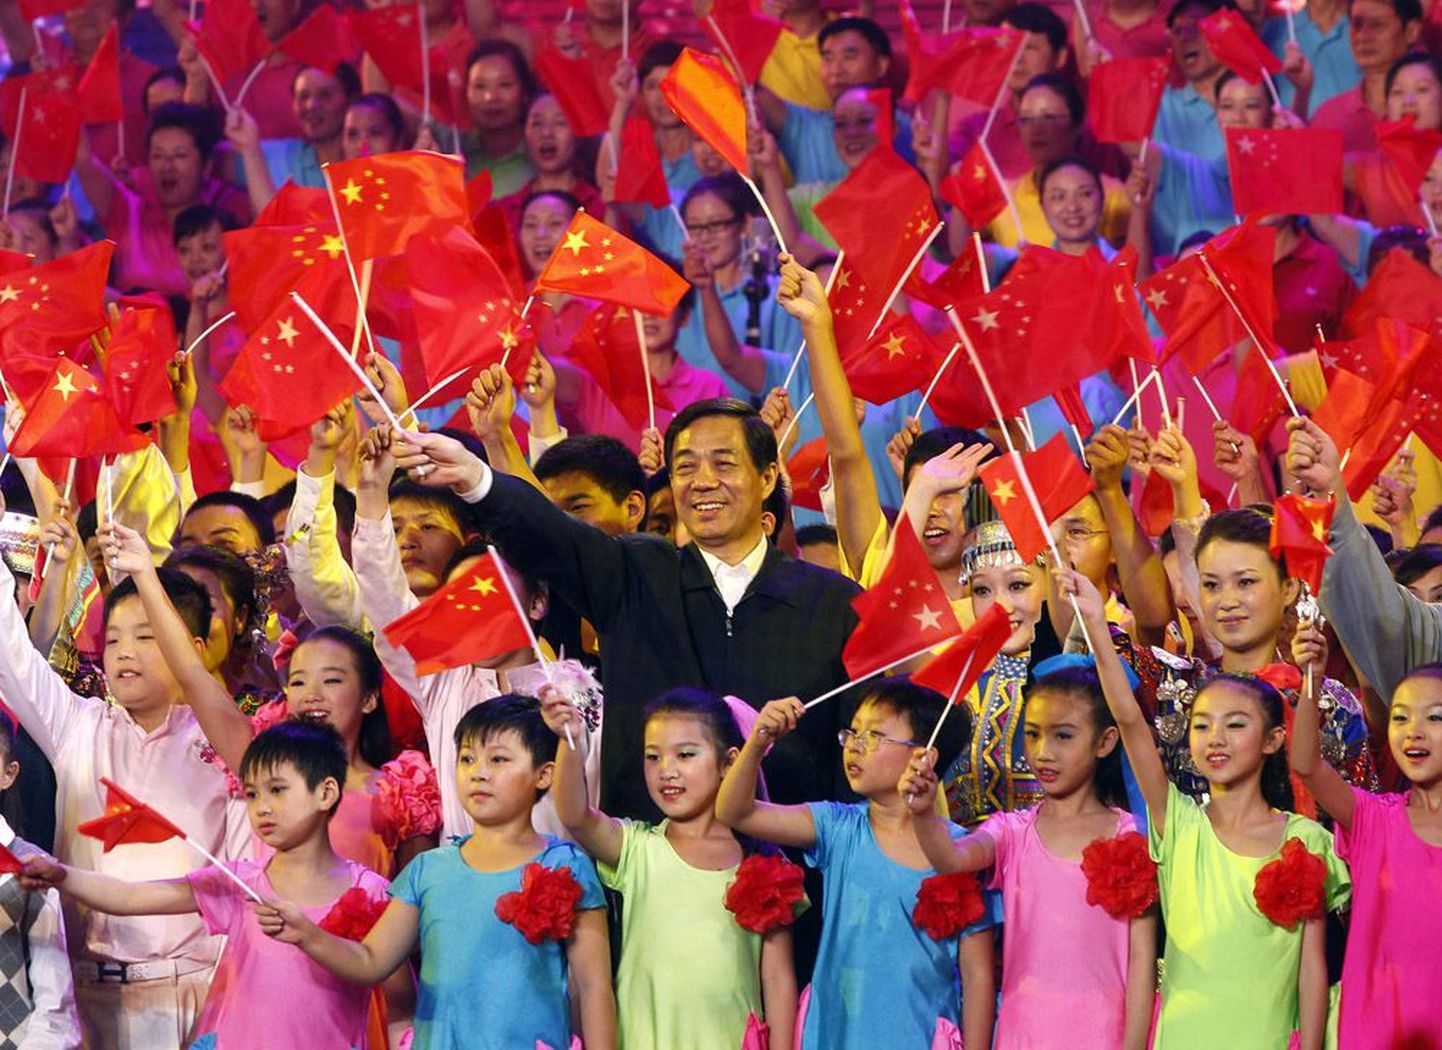 Bo Xilai laulmas 2011. aastal koos lastega Mao Zedongi ajast pärinevat revolutsioonilist laulu. Osa vaatlejaid arvab, et Bole sai saatuslikuks Mao karmi liini järgimine.